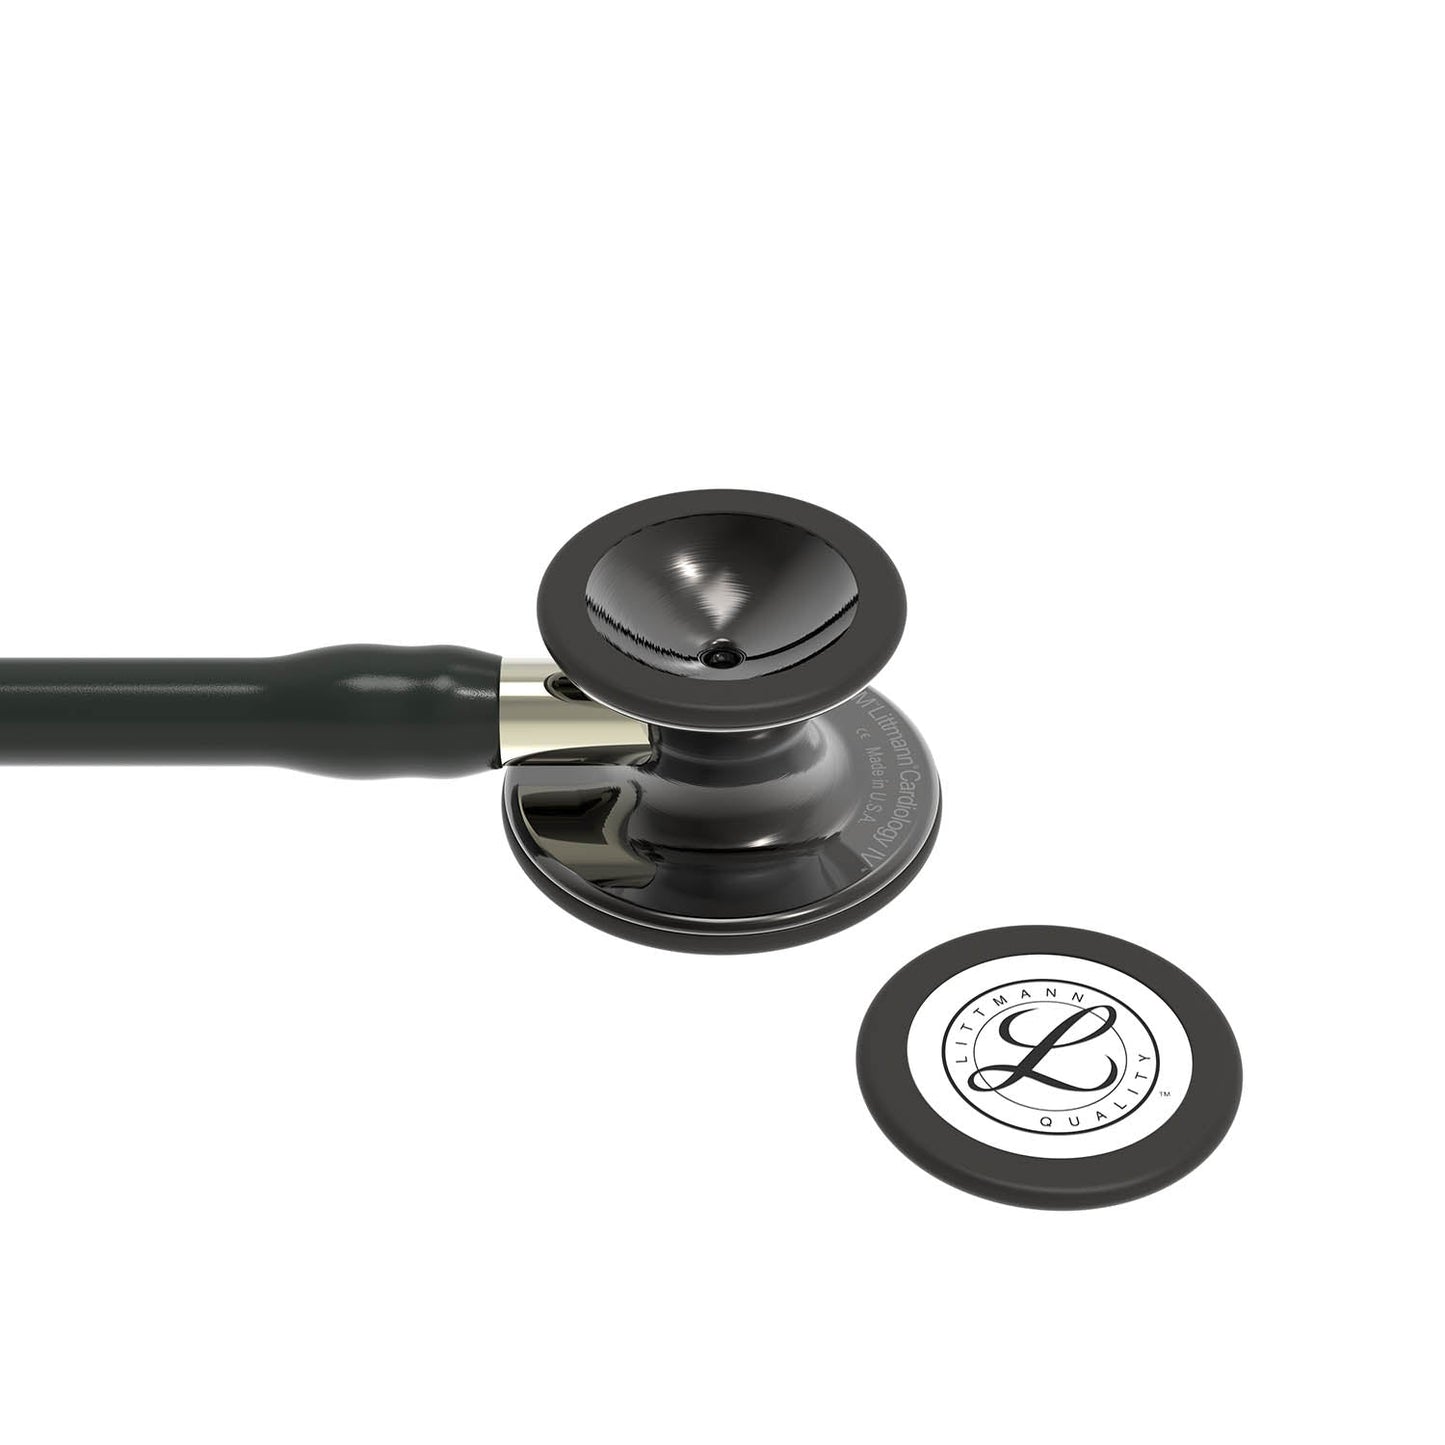 3M™ Littmann® Cardiology IV™ Stethoskop für die Diagnose, 6204, hochglänzendes Smoke-Finish Bruststück, schwarzer Schlauch, champagnerfarbener Schlauchanschluss und schwarzer Ohrbügel, 69 cm